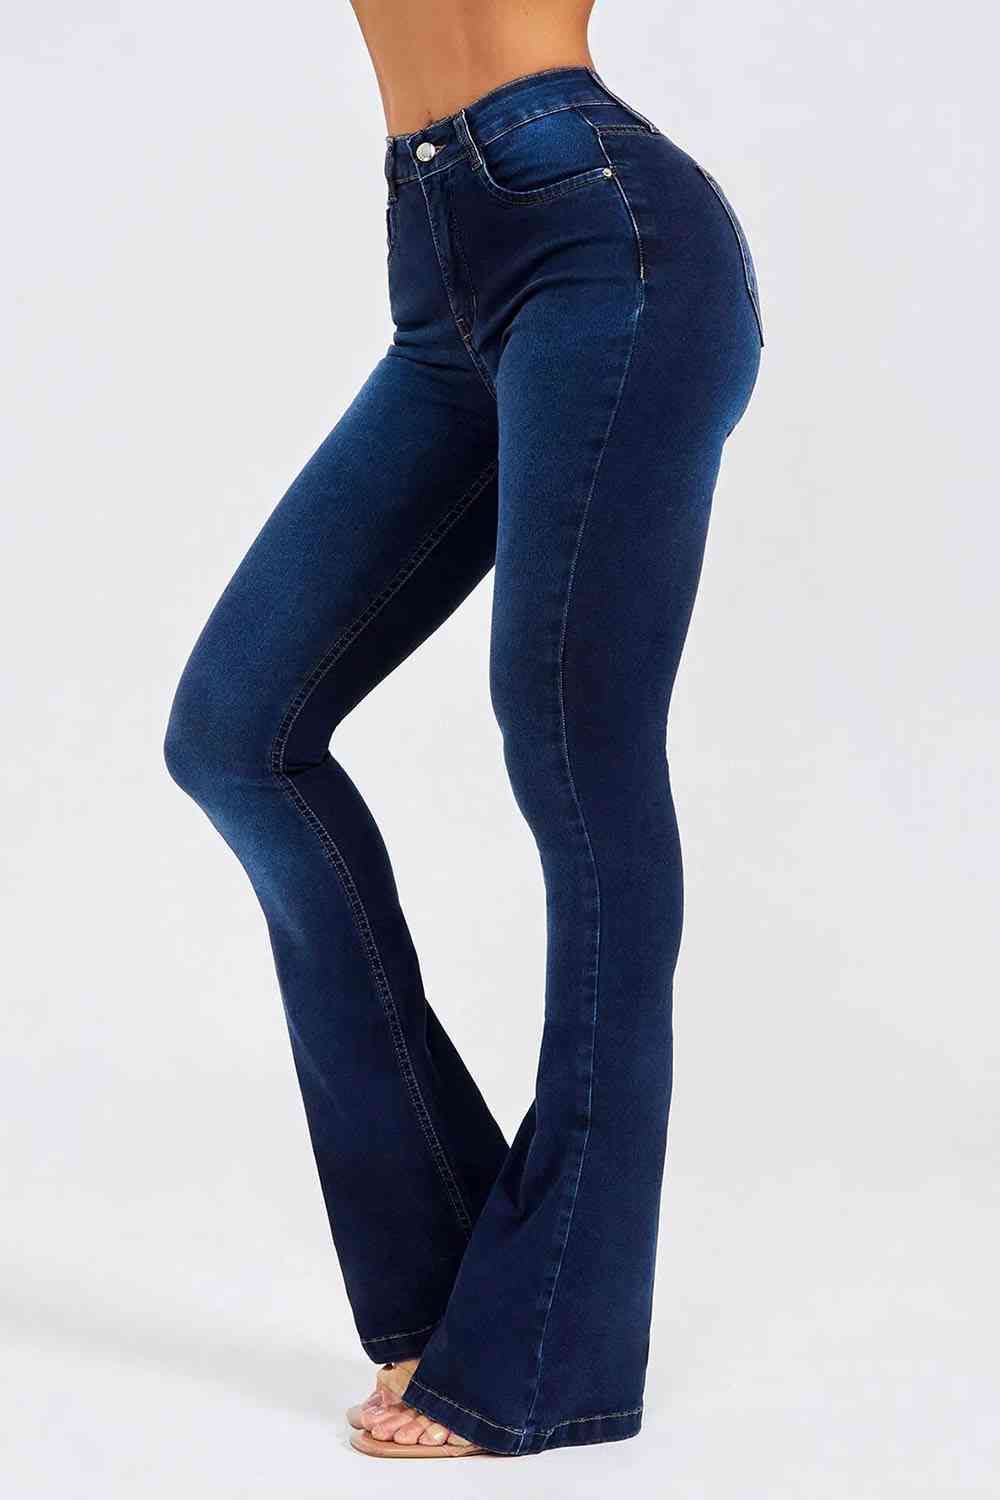 KHD Buttoned Long Jeans  Krazy Heart Designs Boutique   